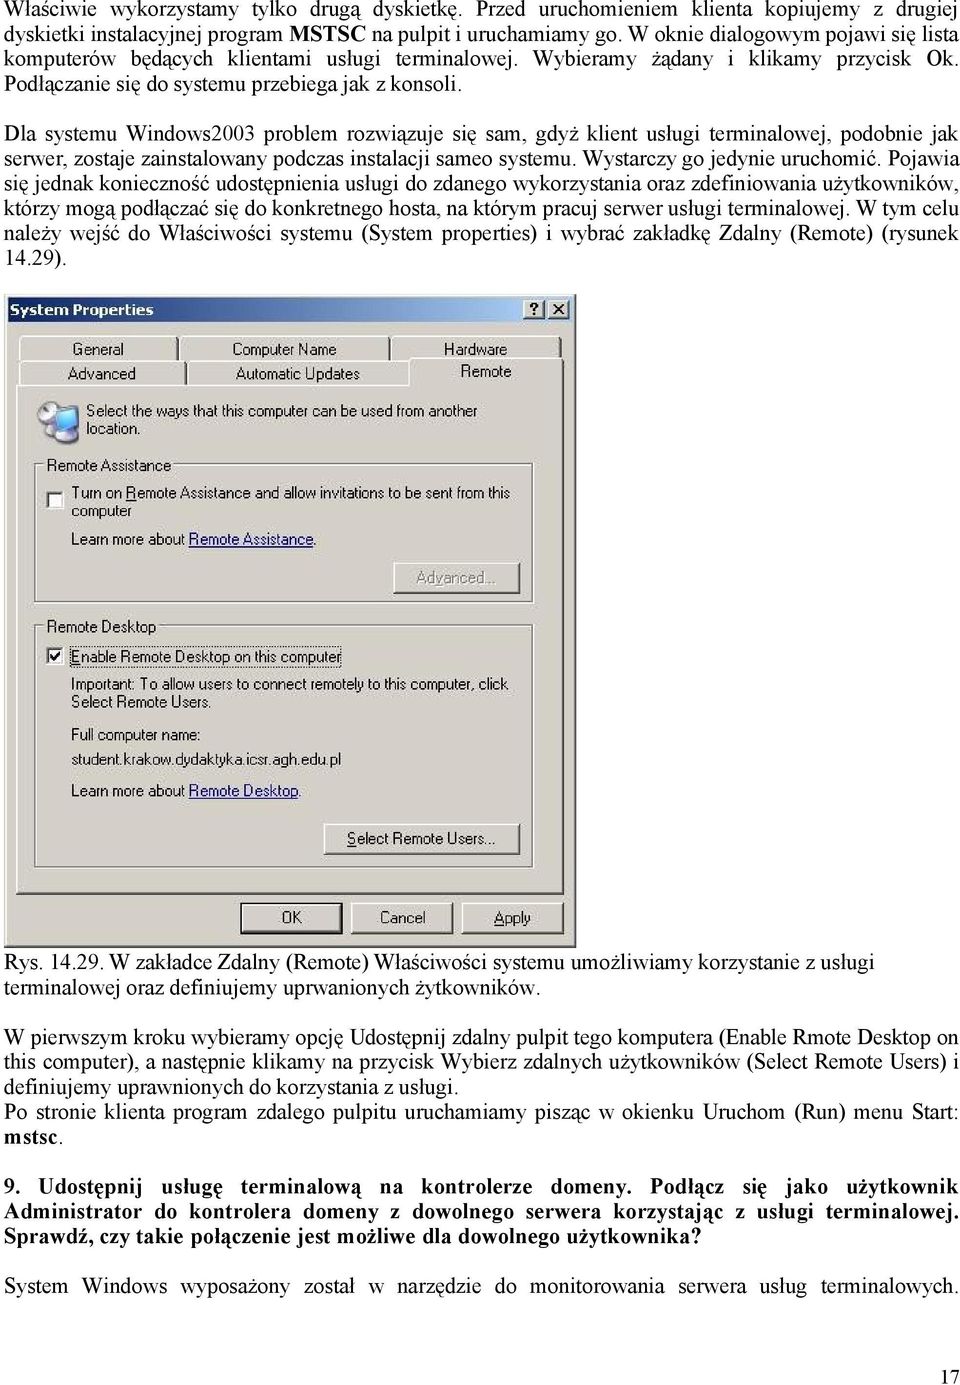 Dla systemu Windows2003 problem rozwiązuje się sam, gdyż klient usługi terminalowej, podobnie jak serwer, zostaje zainstalowany podczas instalacji sameo systemu. Wystarczy go jedynie uruchomić.